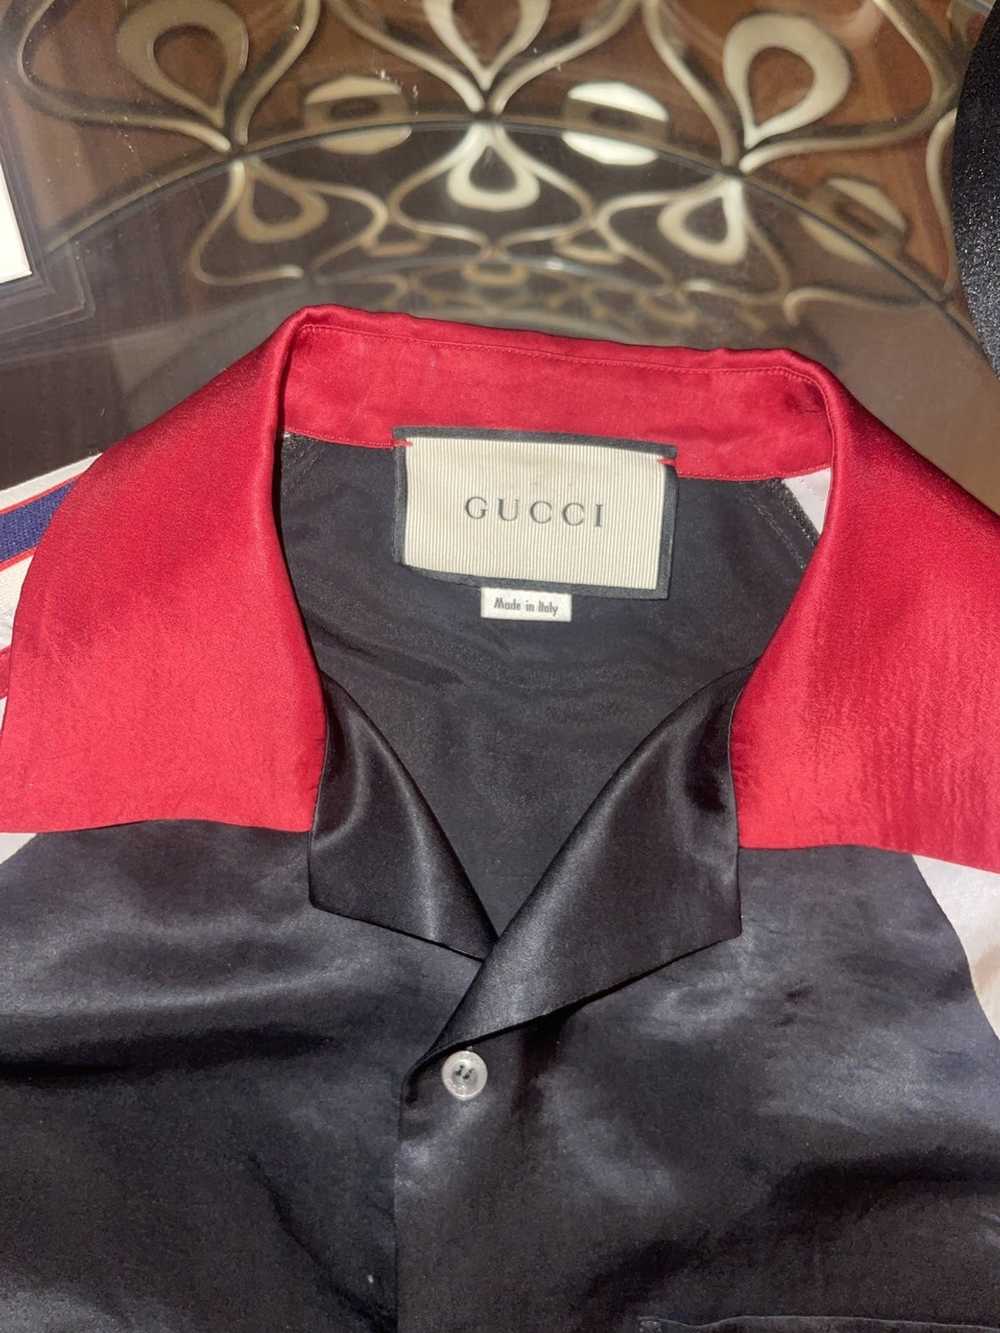 Gucci Gucci Ace-Tate Bowling Shirt (silk) - image 4